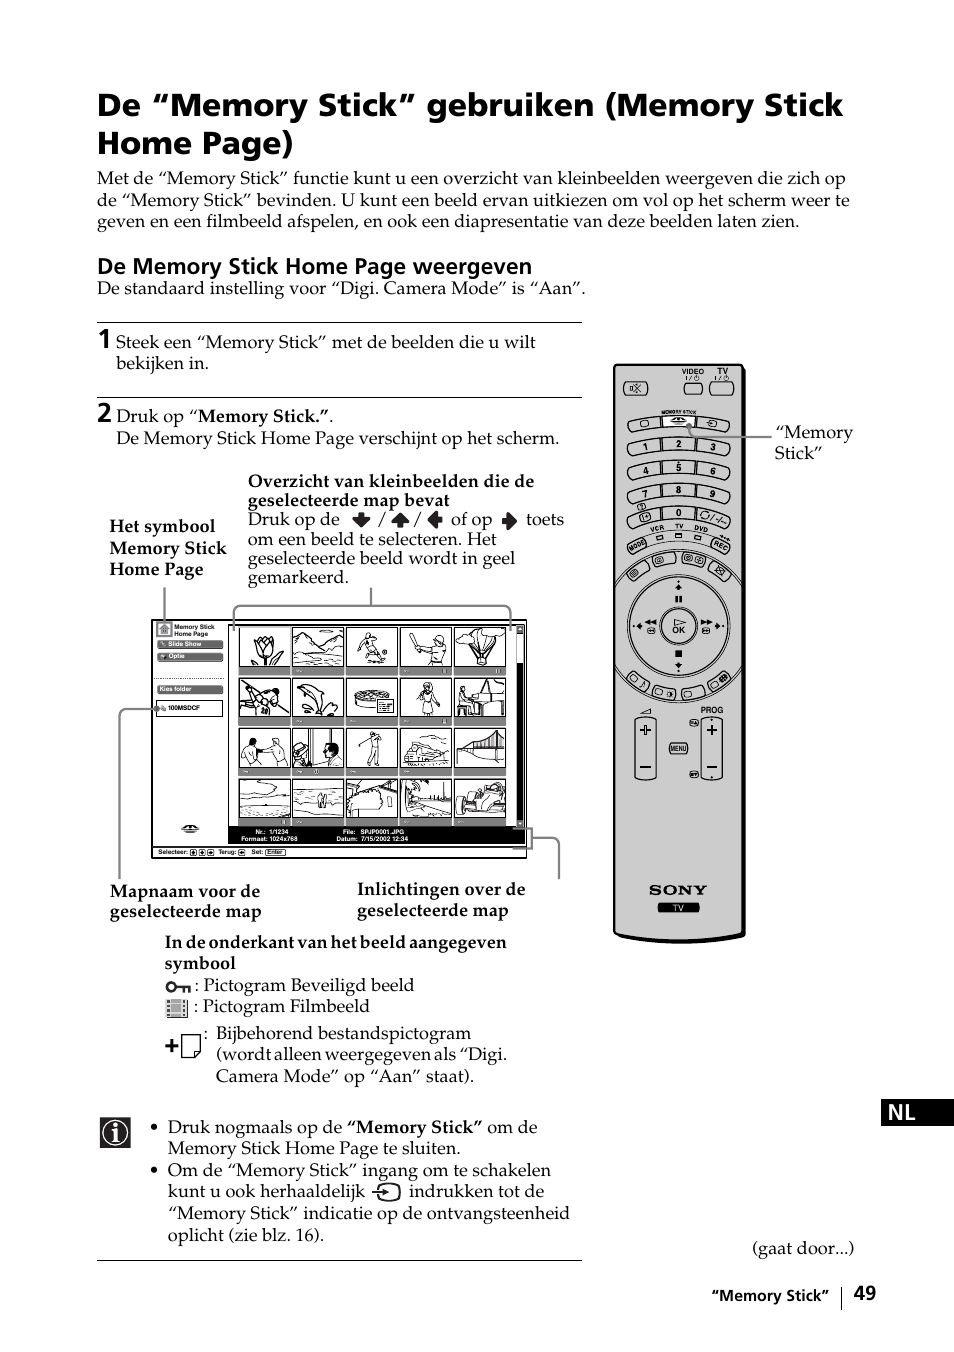 Sony KE-42MR1 Manuale d'uso | Pagina 125 / 302